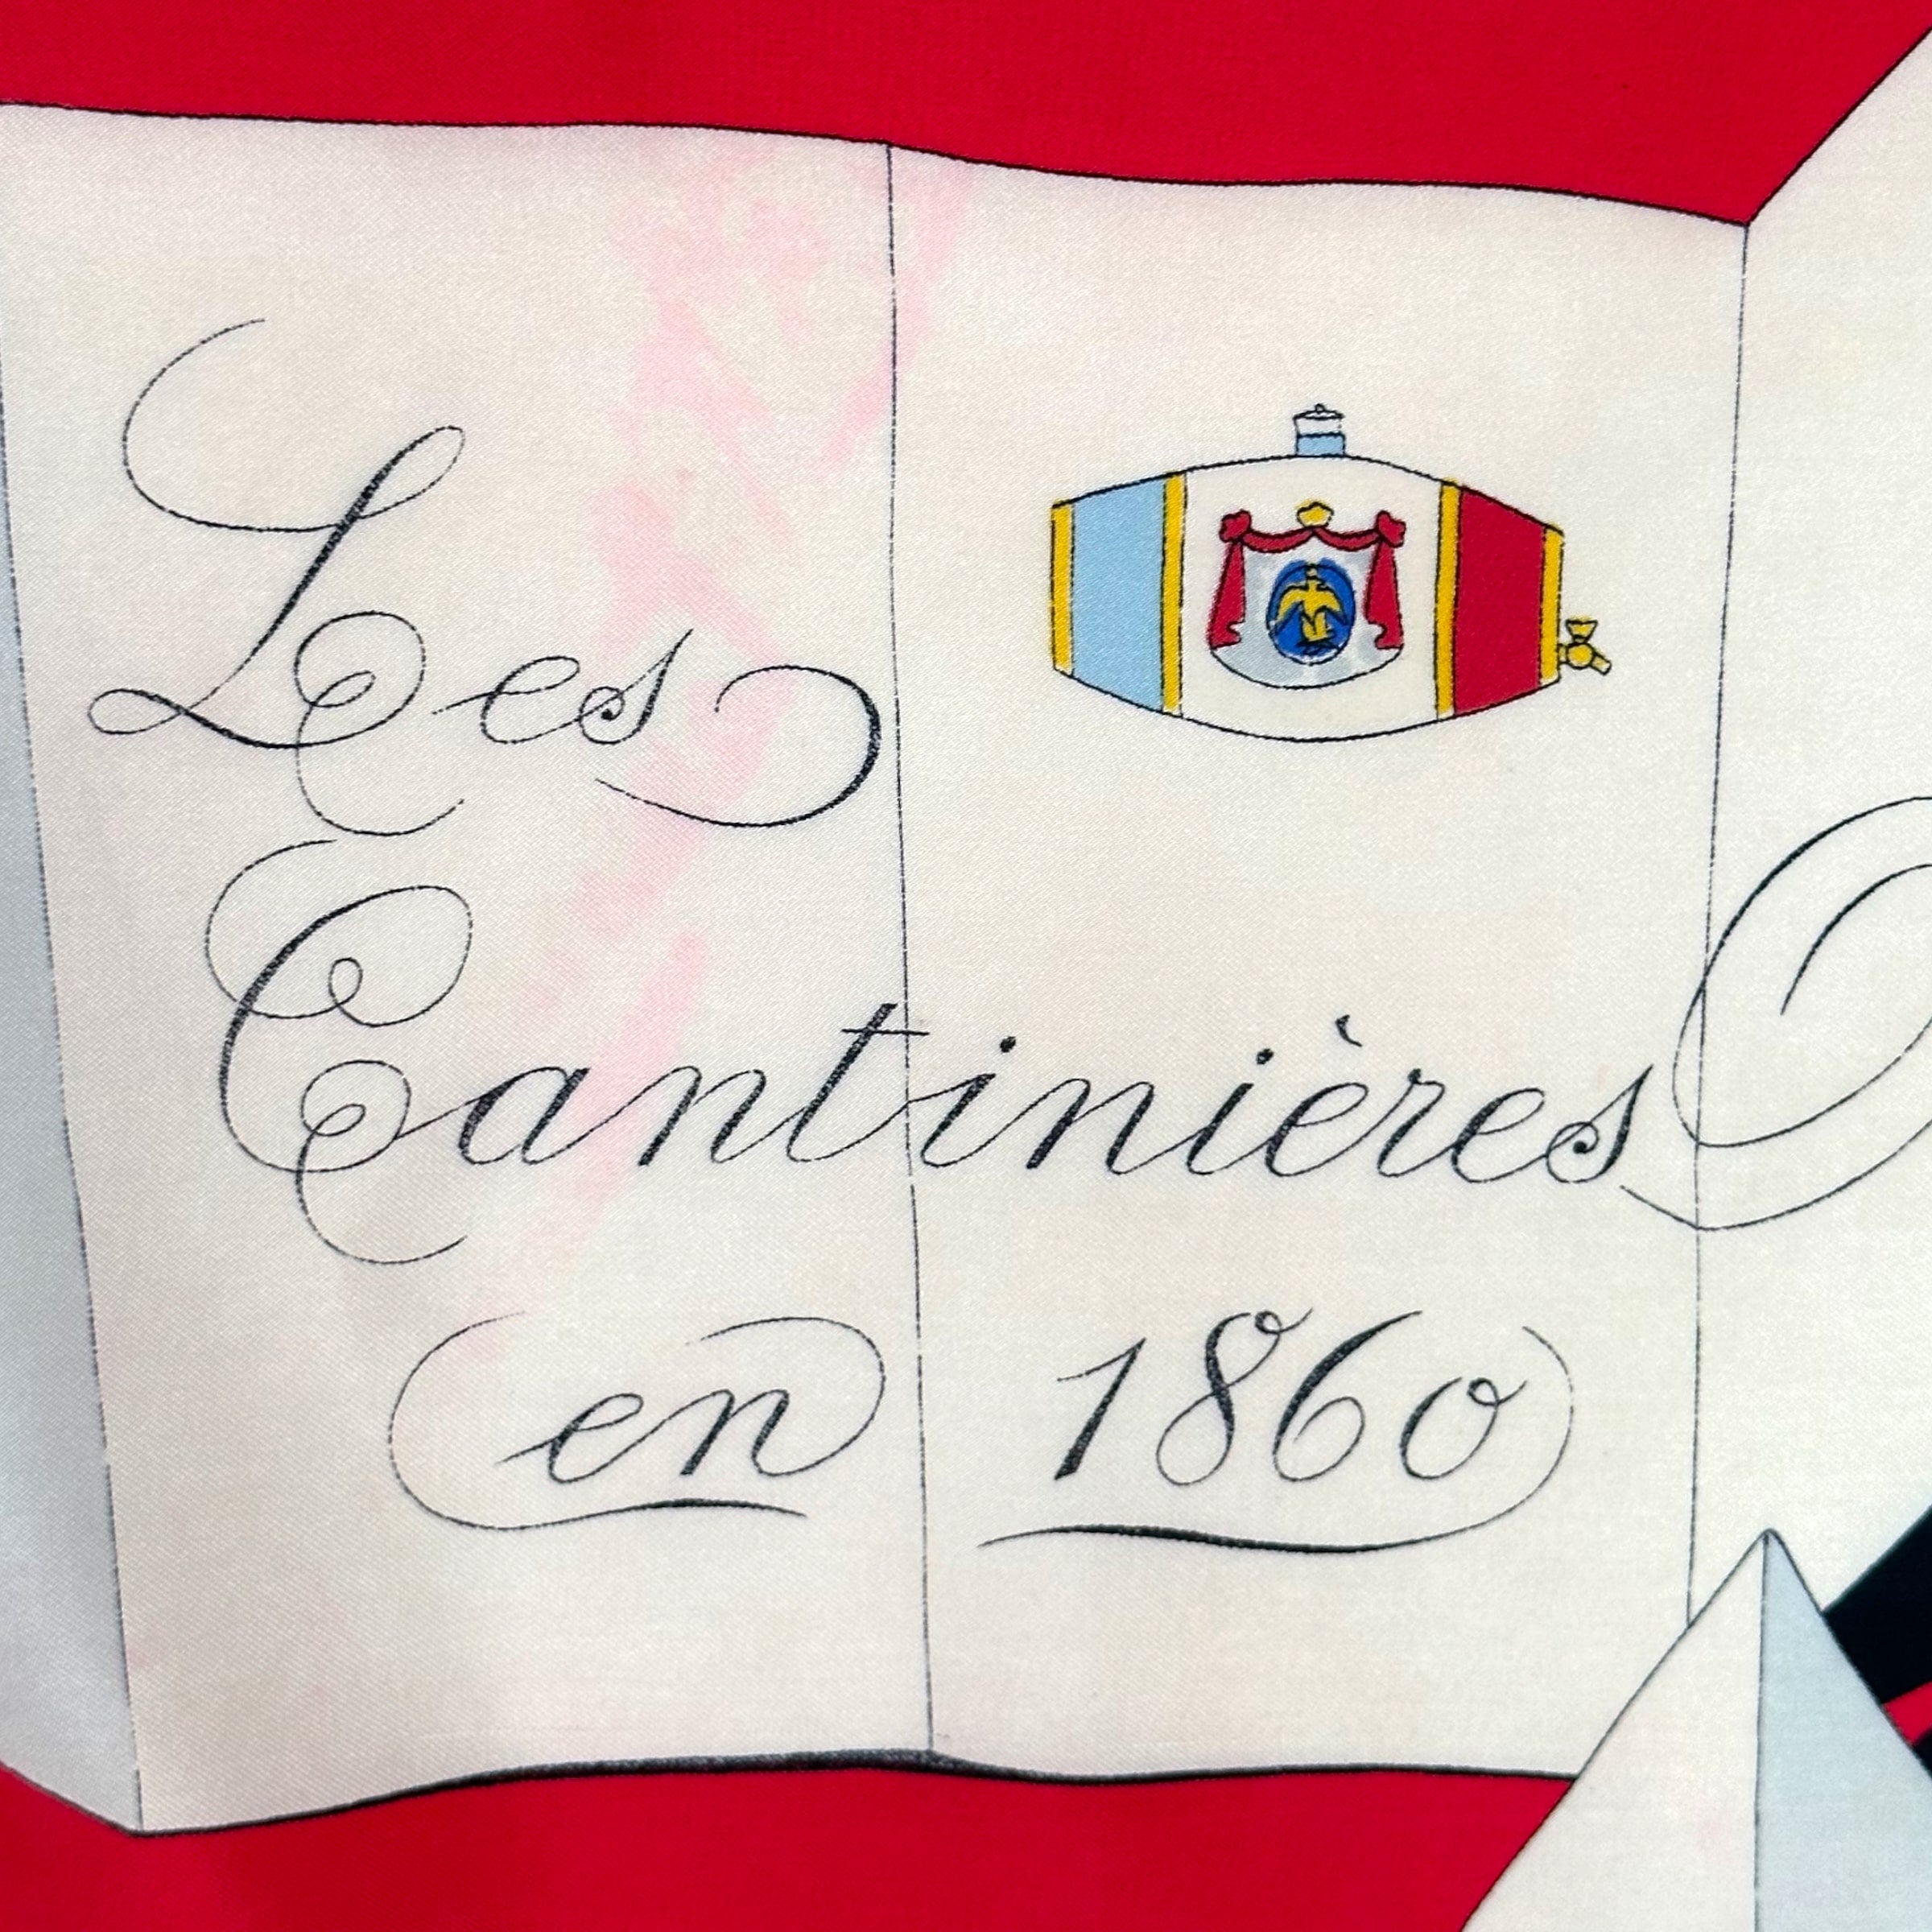 Les Cantinières en 1860 - FOULARD HERMES - 1953